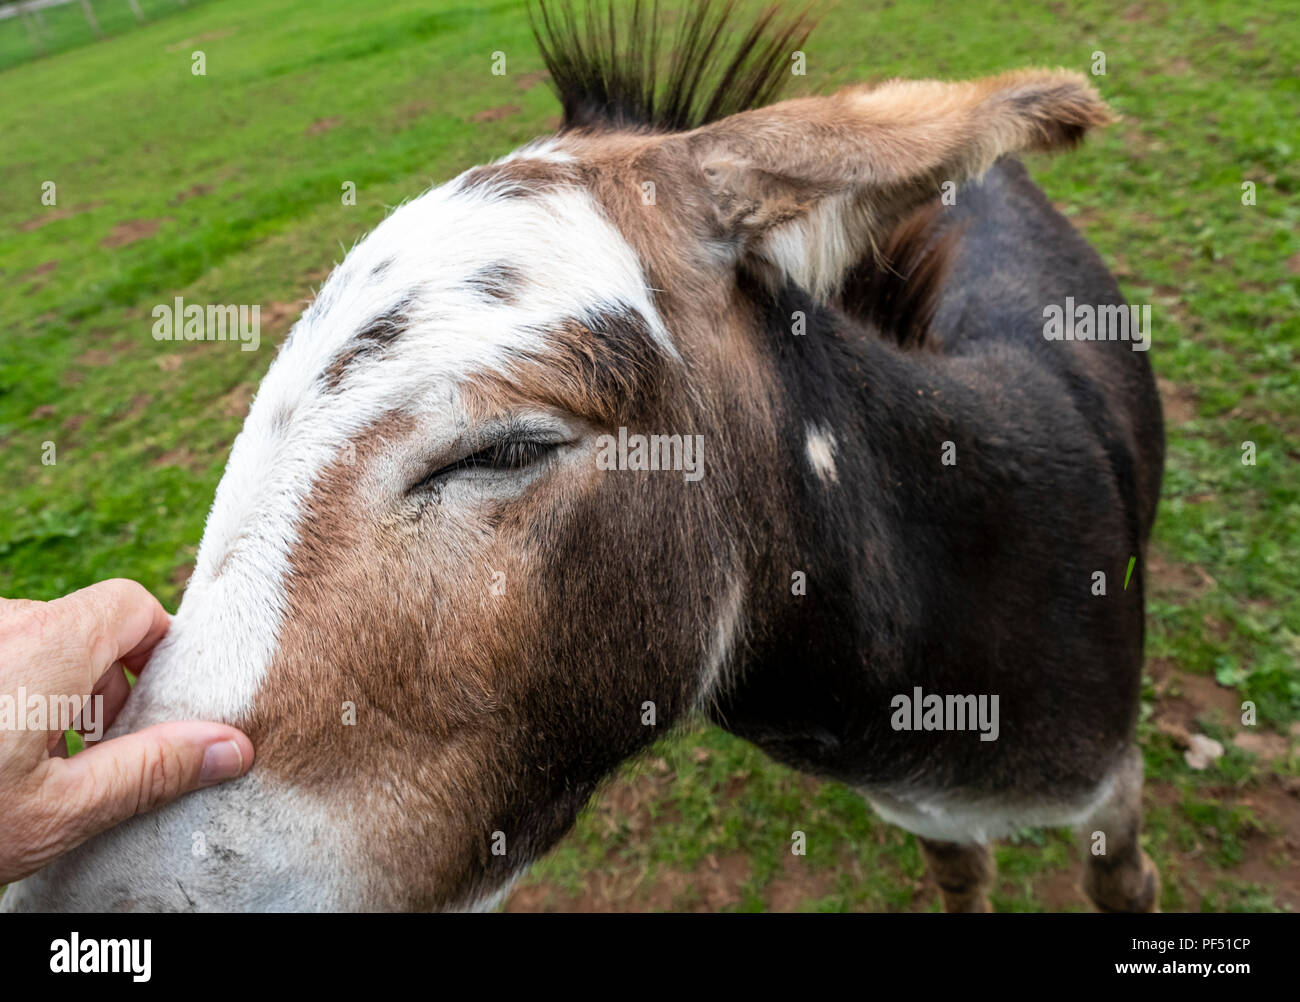 A farmyard donkey enjoys a scratch by a man. Stock Photo